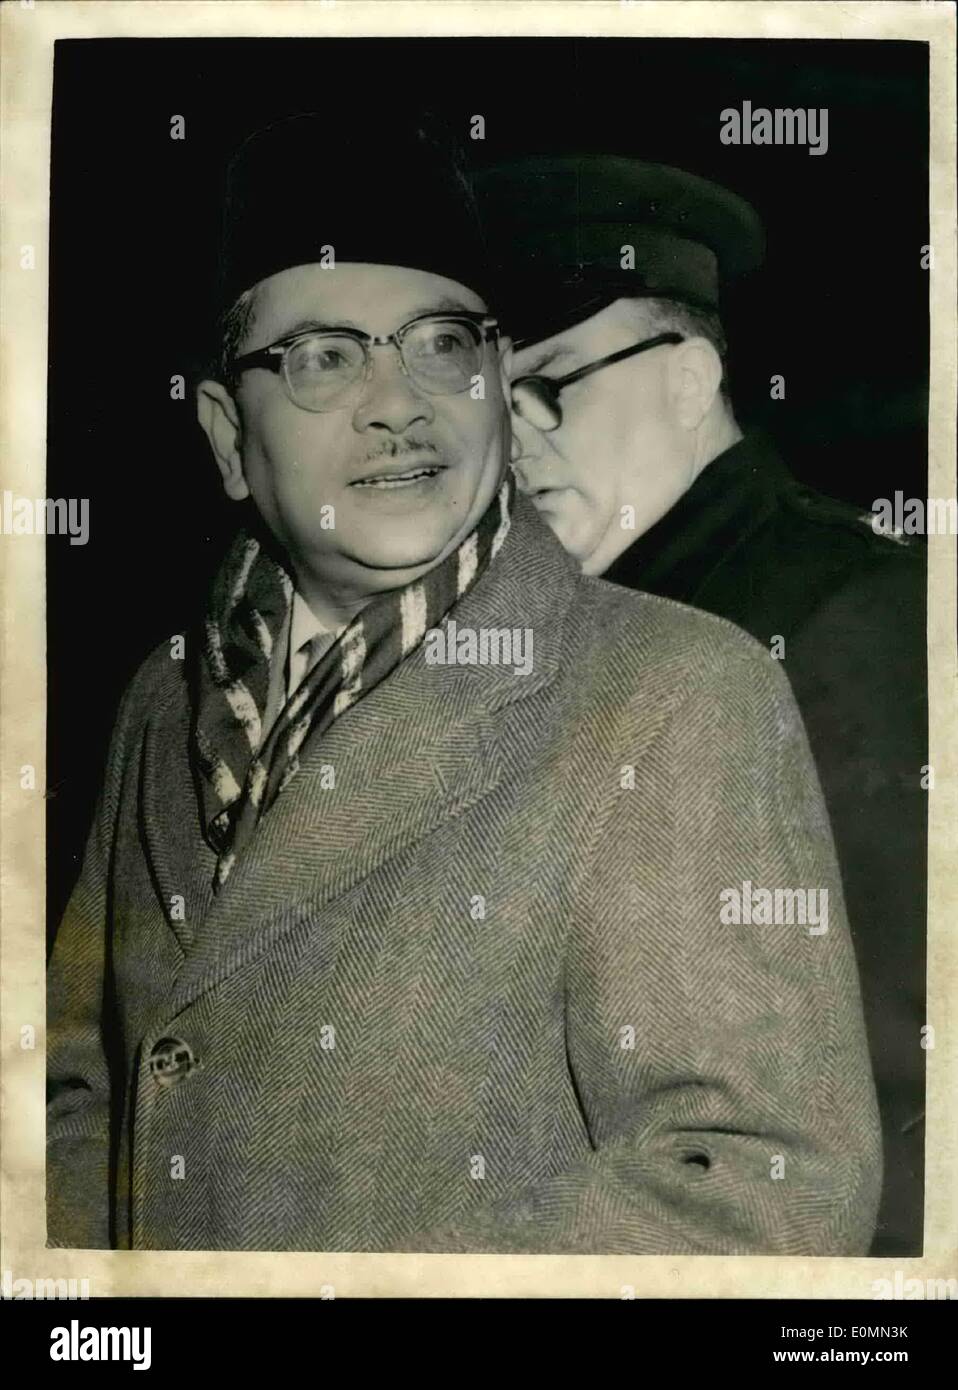 1. Januar 1956 - kommt Hauptminister von Malaya in London. Der Chief Minister von der Föderation Malaya - Tengku (Prinz) Abdul Rahman, angekommen am Flughafen London heute Abend. Sein Ziel ist es, malaiischen Unabhängigkeit 1957 zu sichern. Keystone-Foto zeigt: Tengku Abdul Rahman bei seiner Ankunft auf dem Flughafen London heute Abend gesehen. Stockfoto